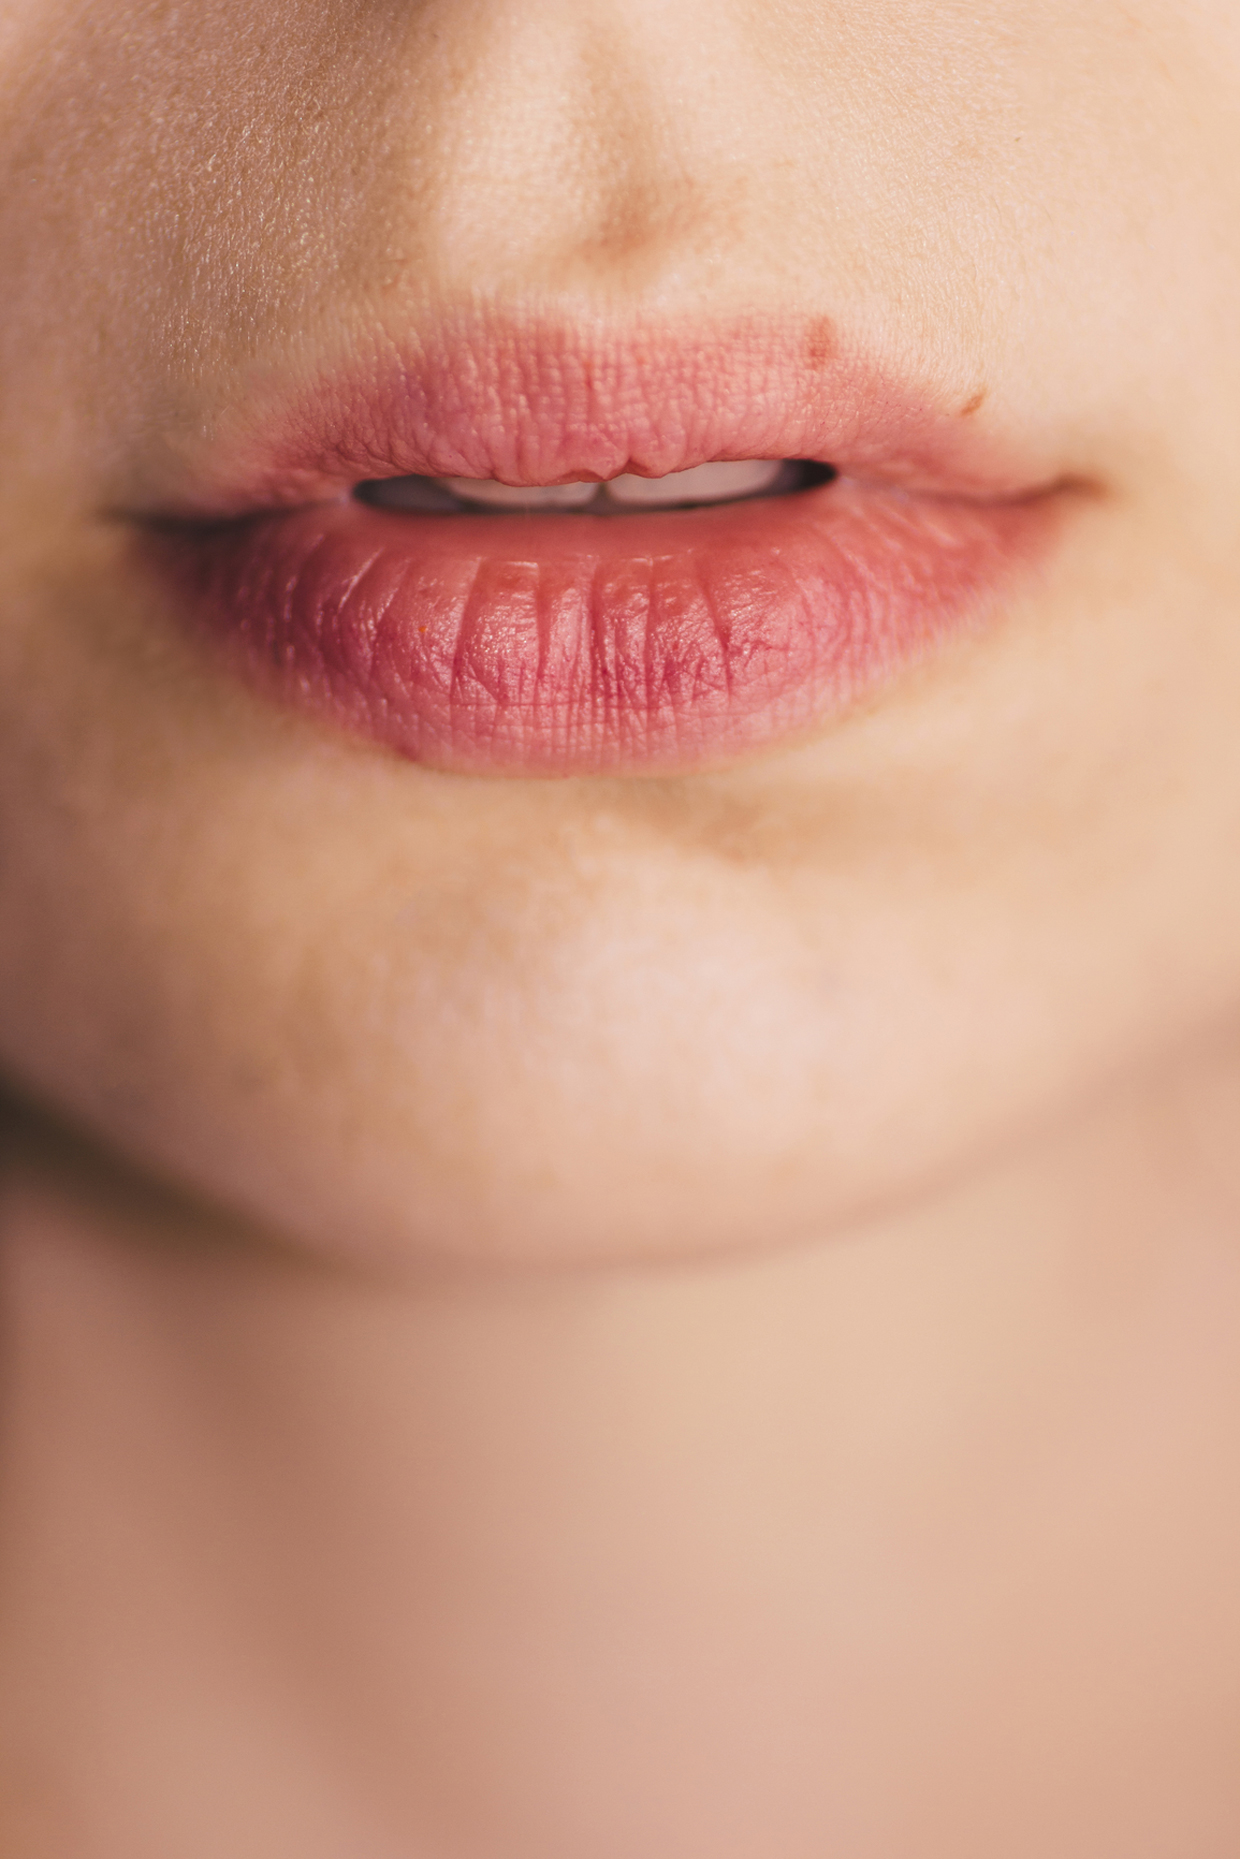 woman chapped lips